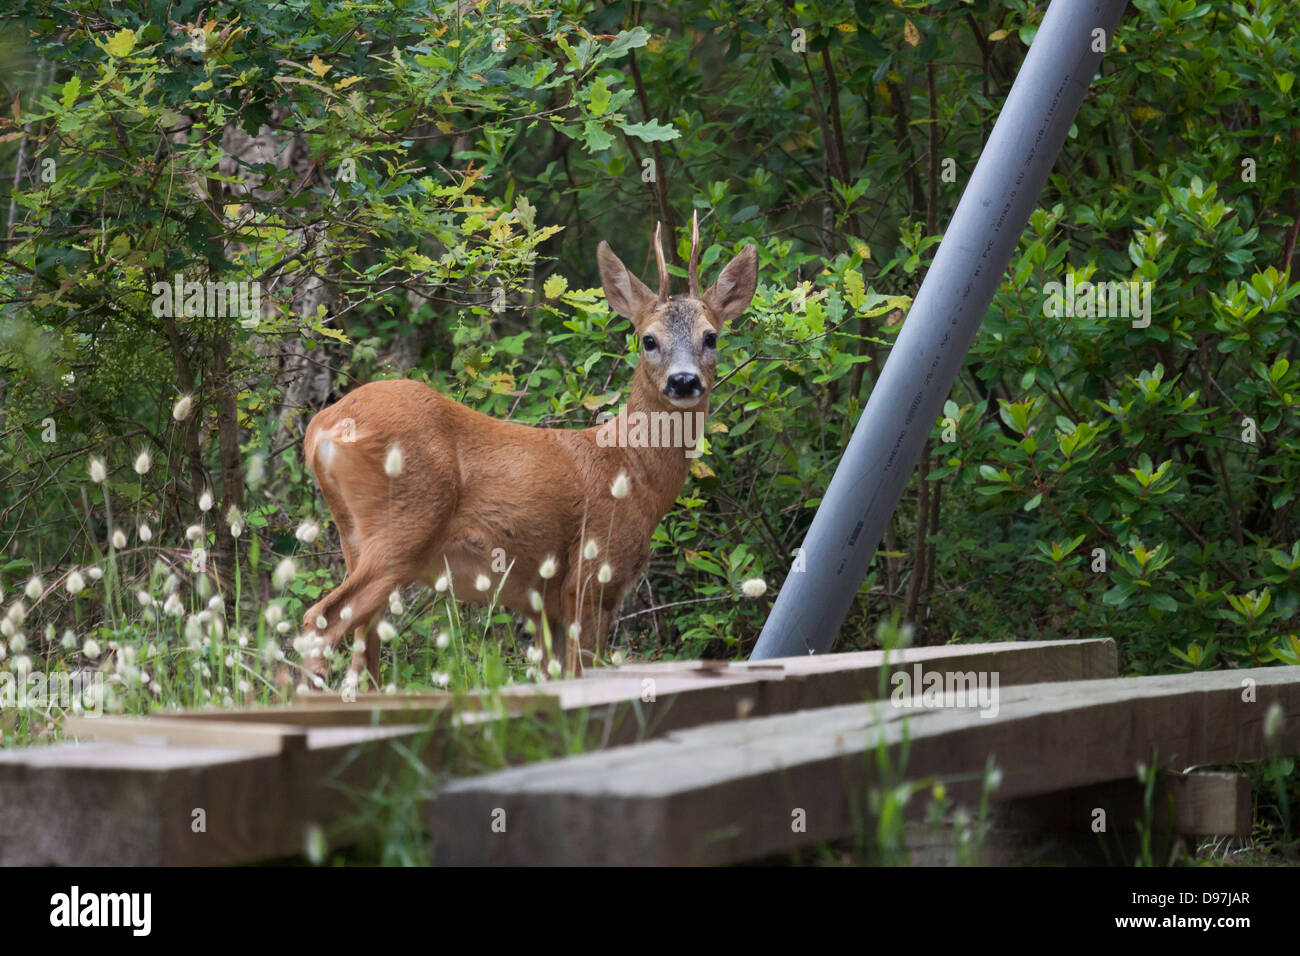 Deer in garden. Stock Photo